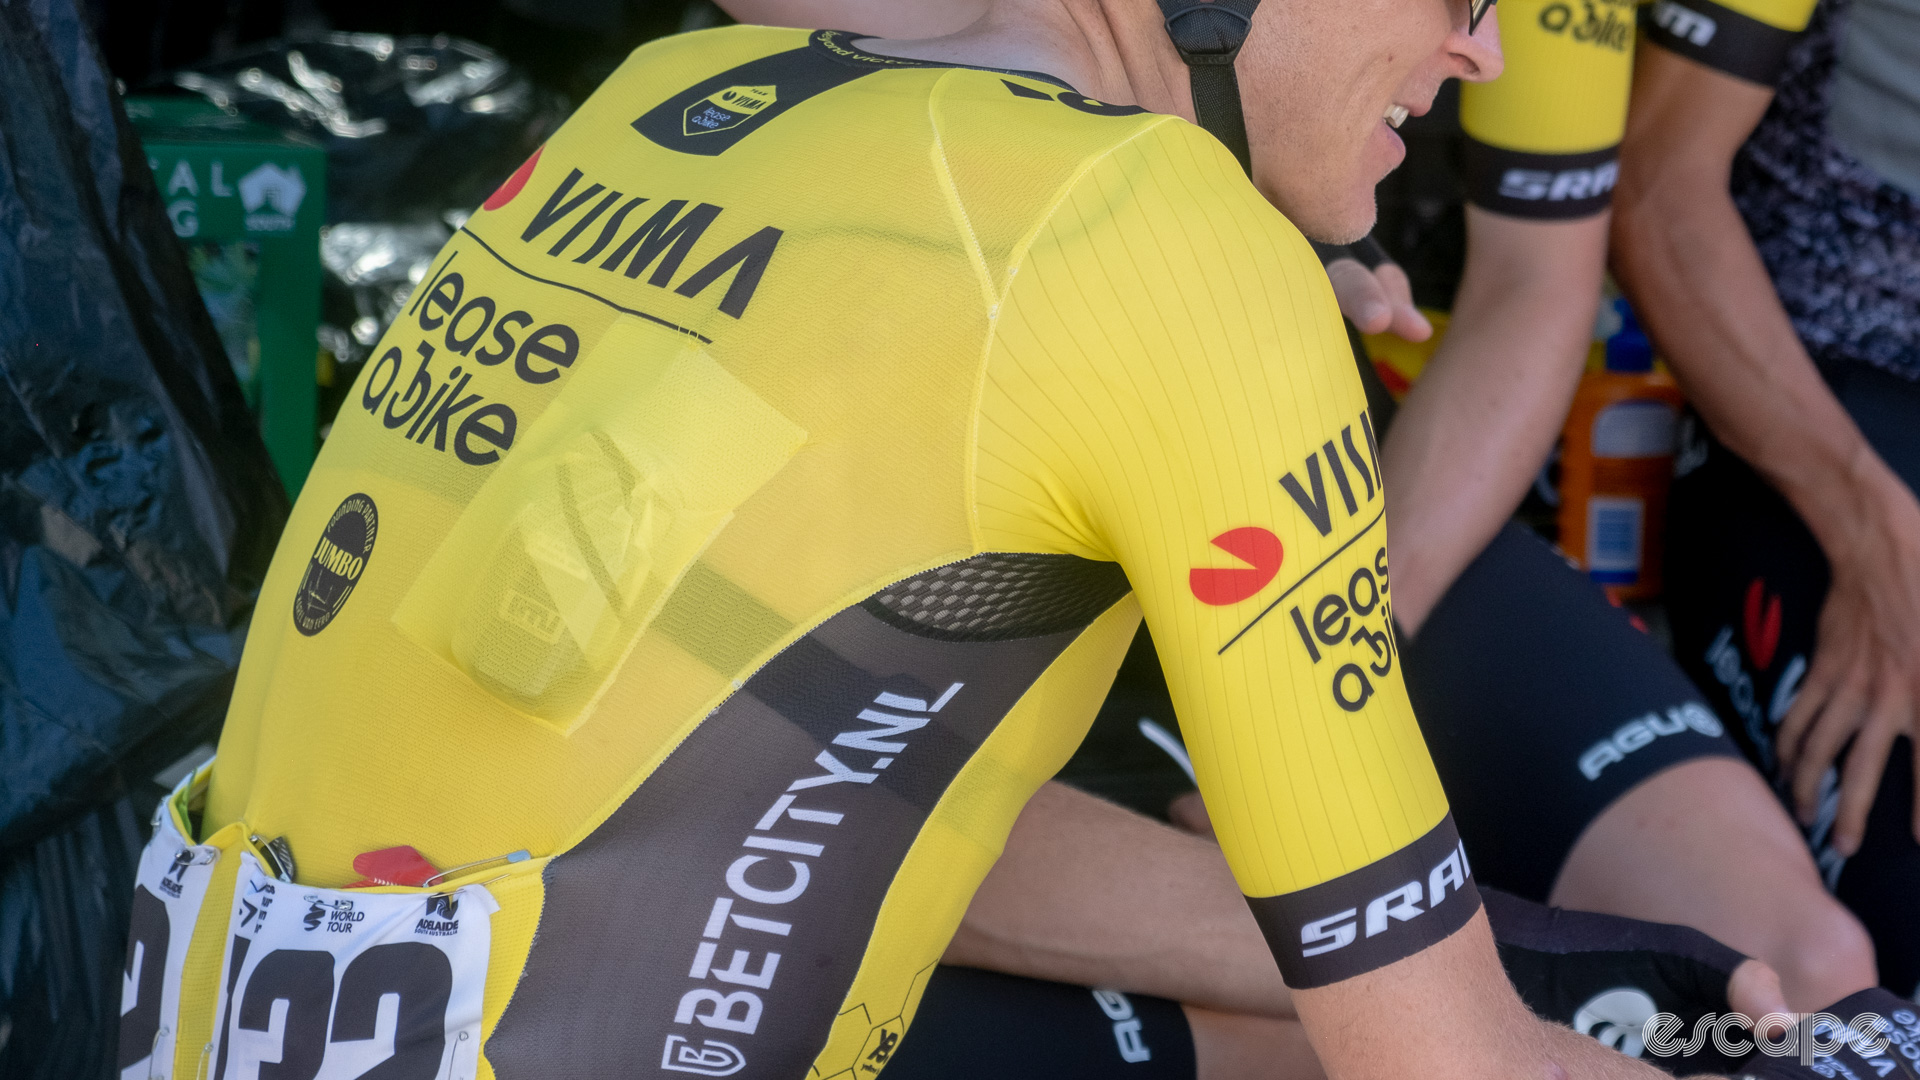 The photo shows a Visma-Lease a bike team jersey sleeve.